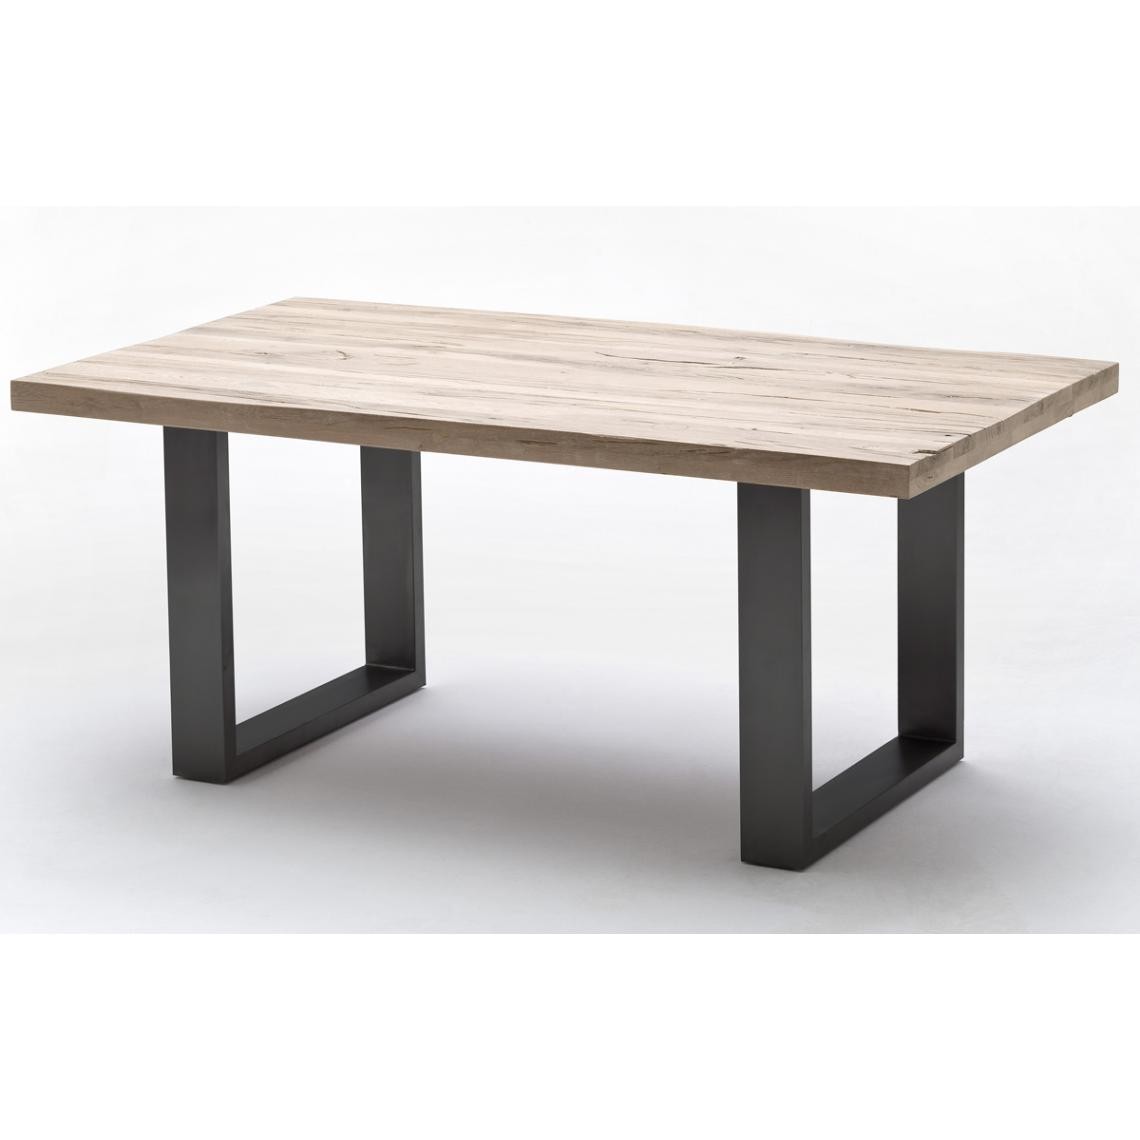 Pegane - Table à manger en chêne massif chaulé/anthracite - L.200 x H.76 x P.100 cm - Tables à manger